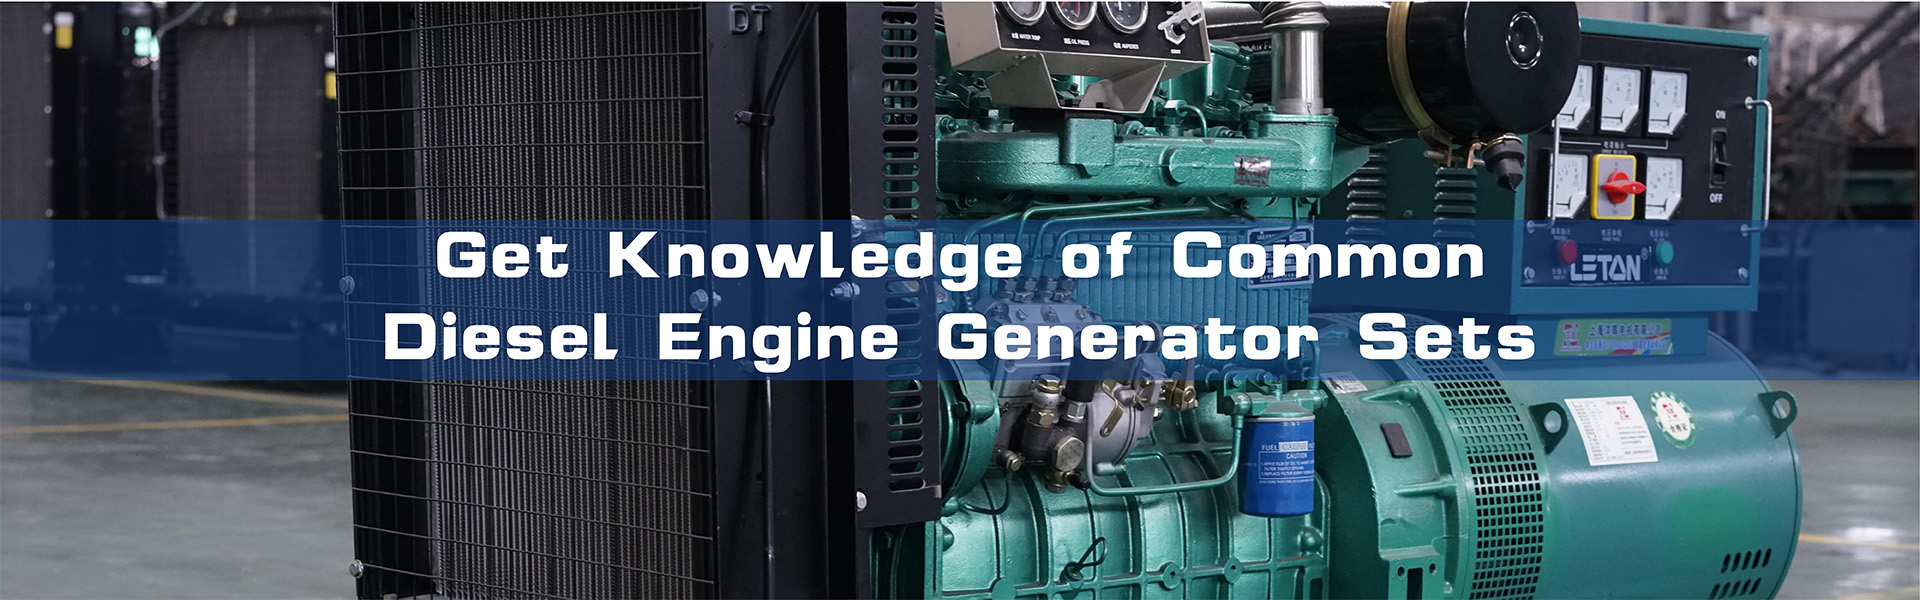 일반적인 디젤 엔진 발전기 세트에 대한 지식 얻기